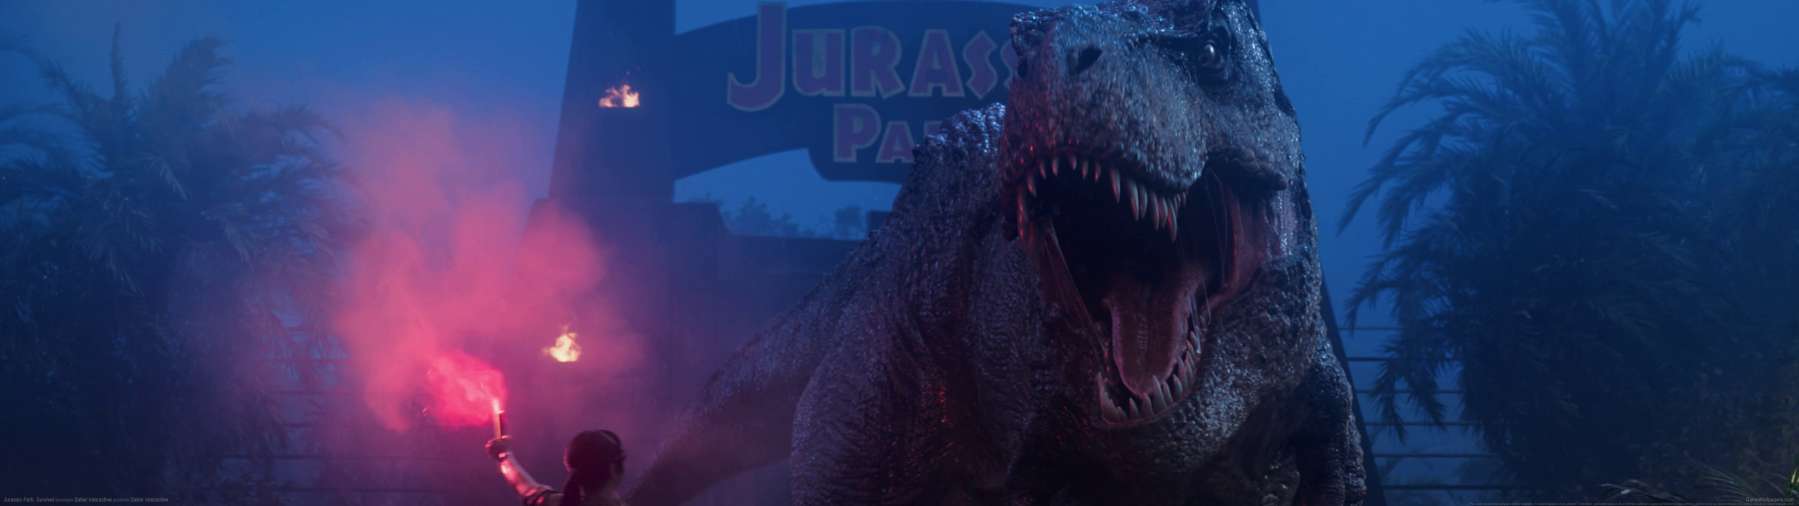 Jurassic Park: Survival achtergrond